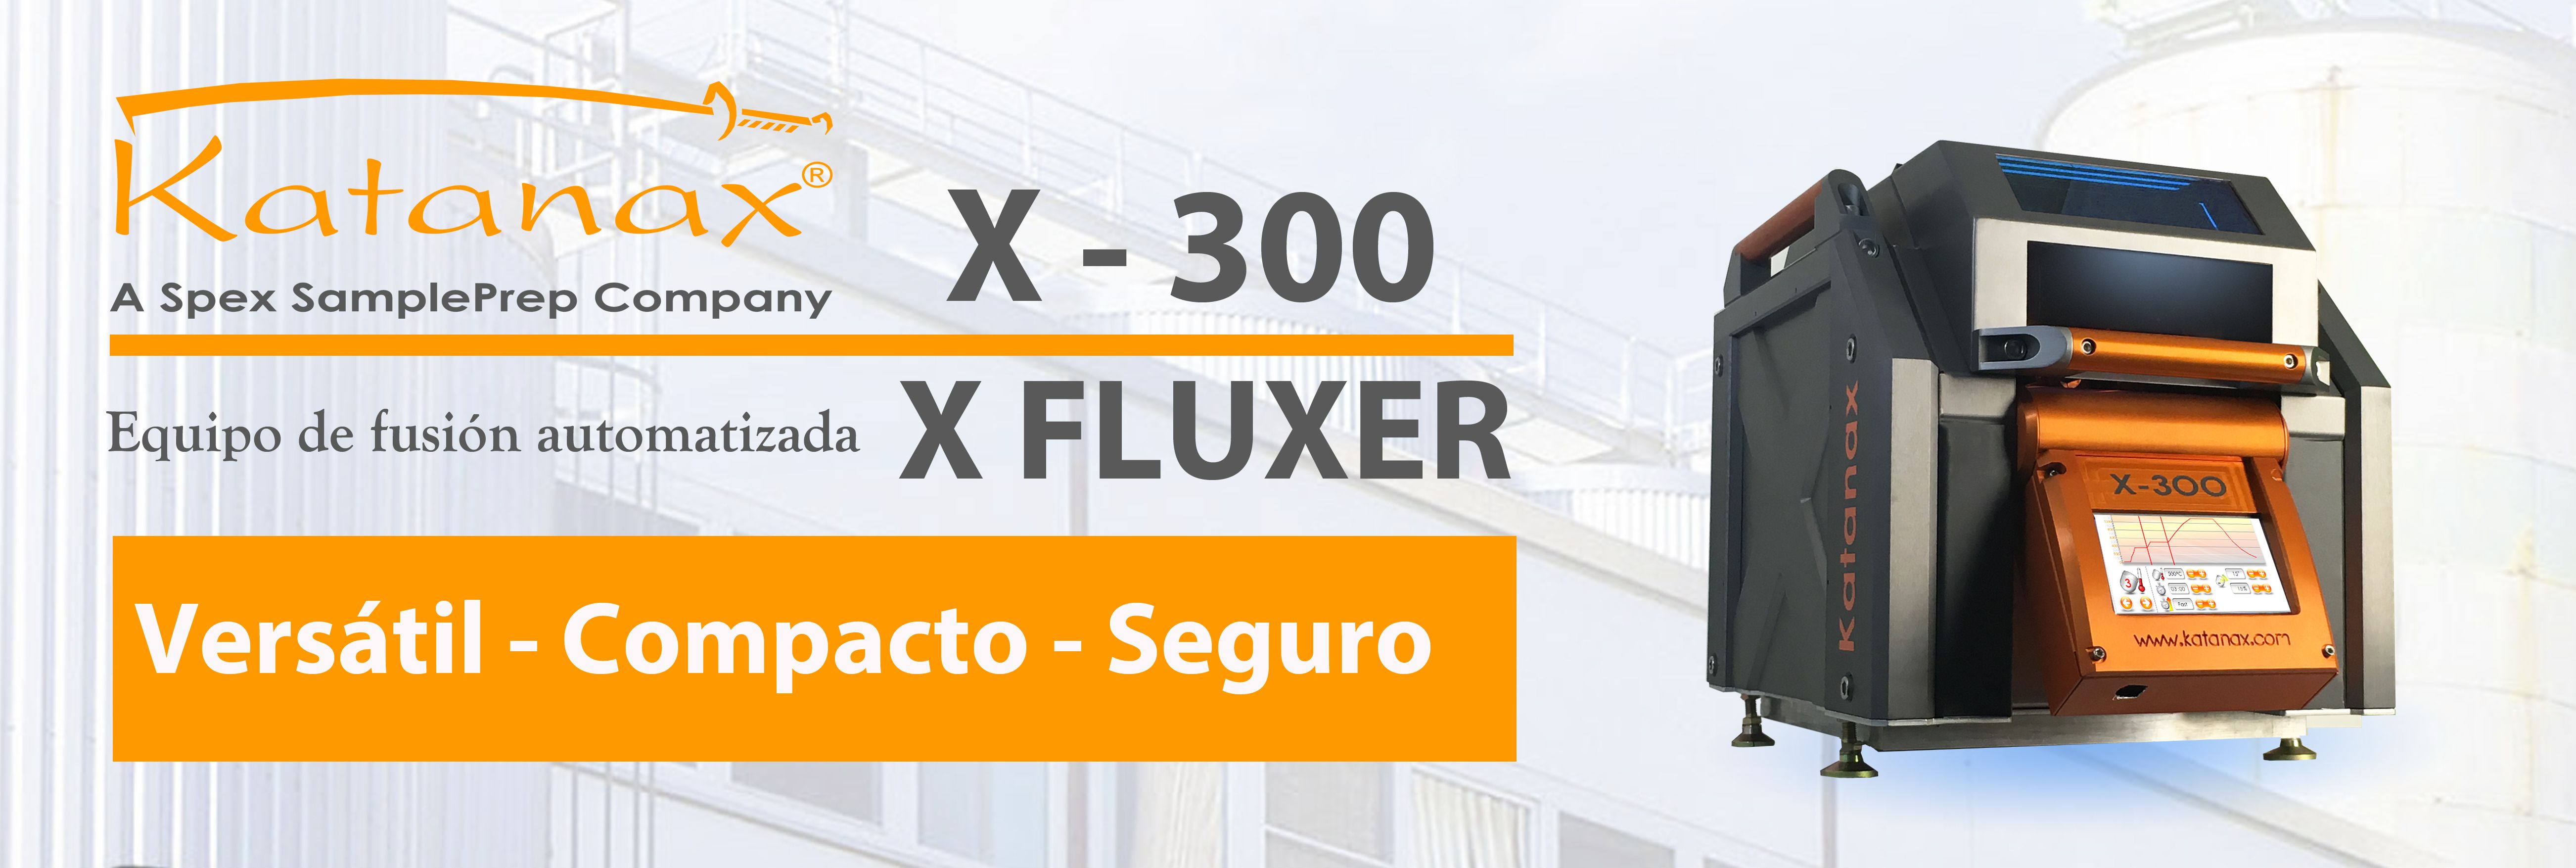 Fluxer X-300: versátil equipo automático de fusión de Katanax